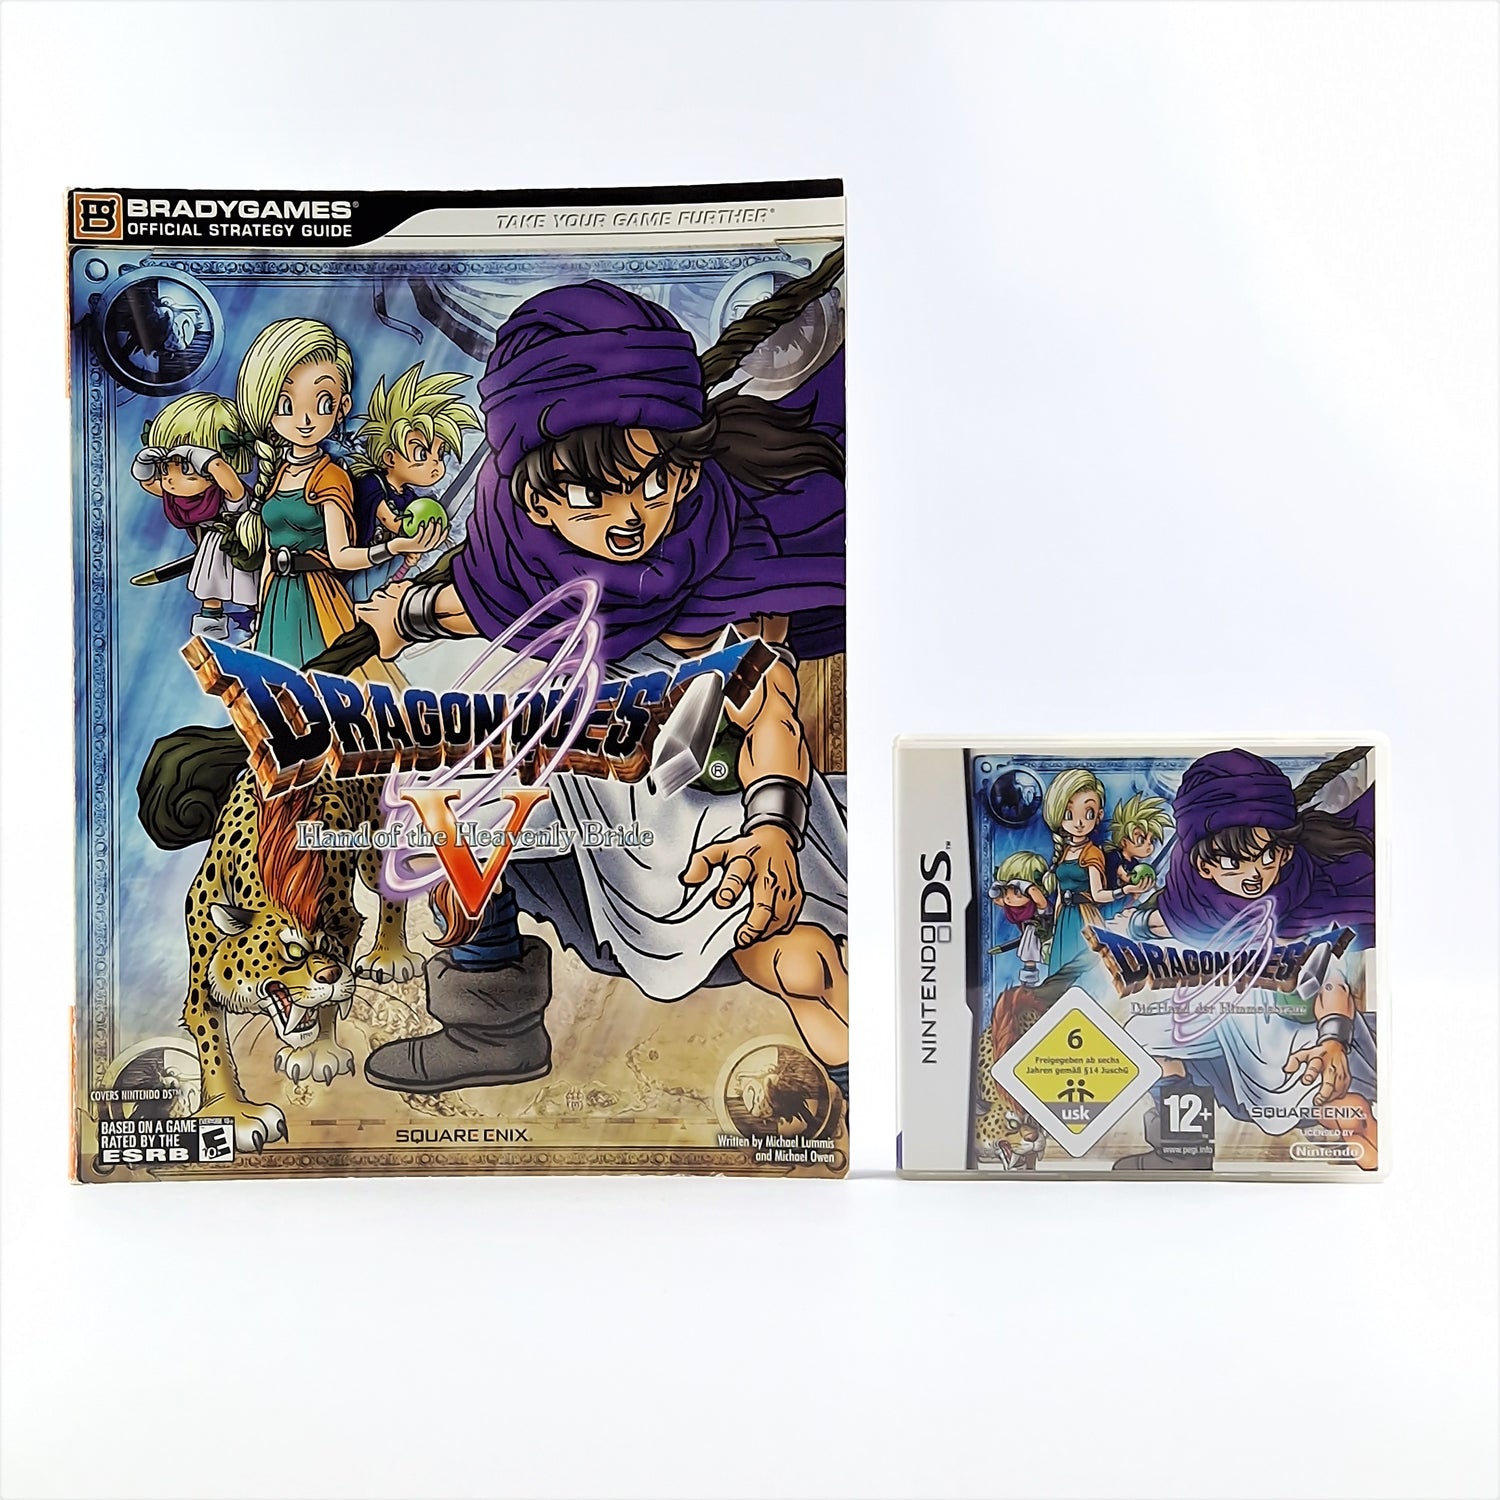 Nintendo DS Spiel : Dragon Quest Die Hand der Himmelsbraut + Bradygames Guide